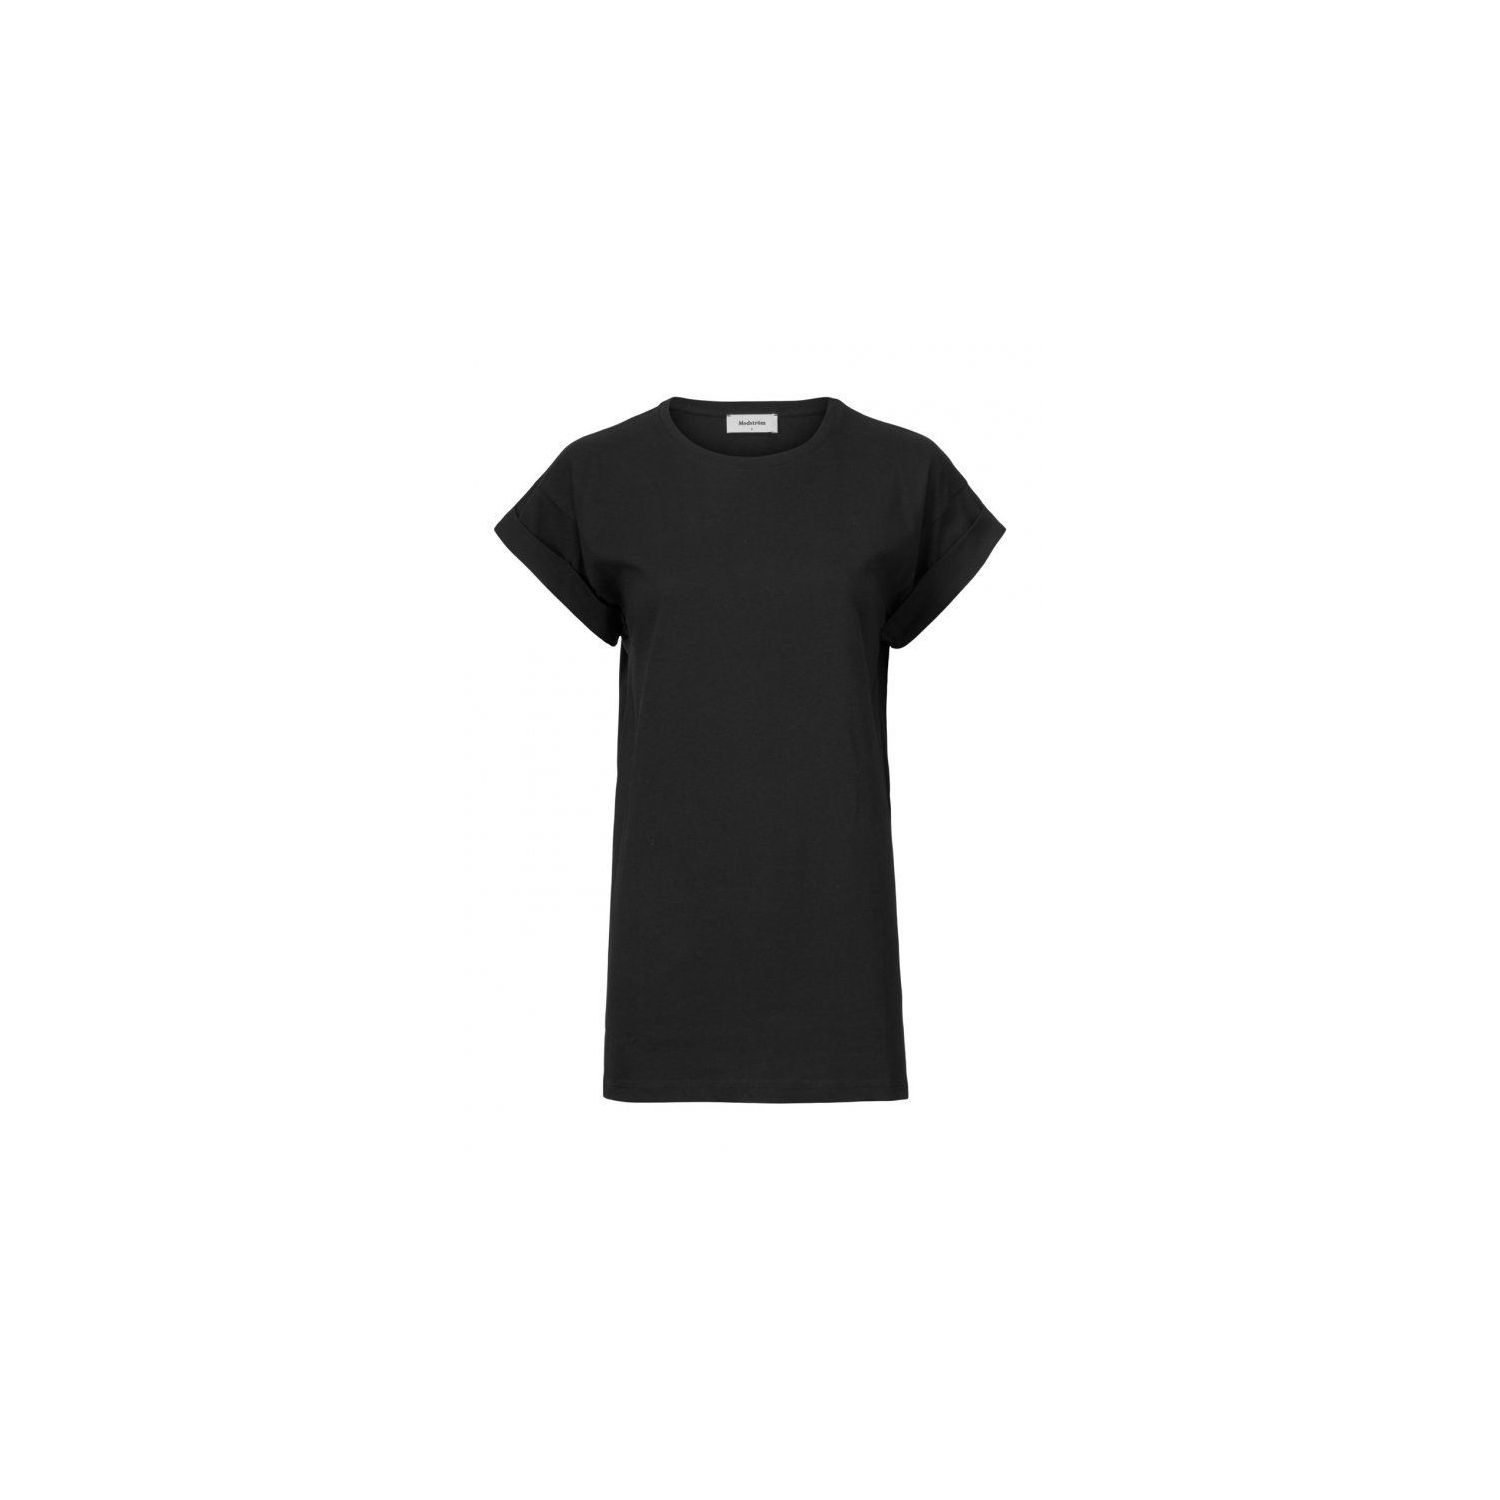 Modstrom brazil t-shirt black